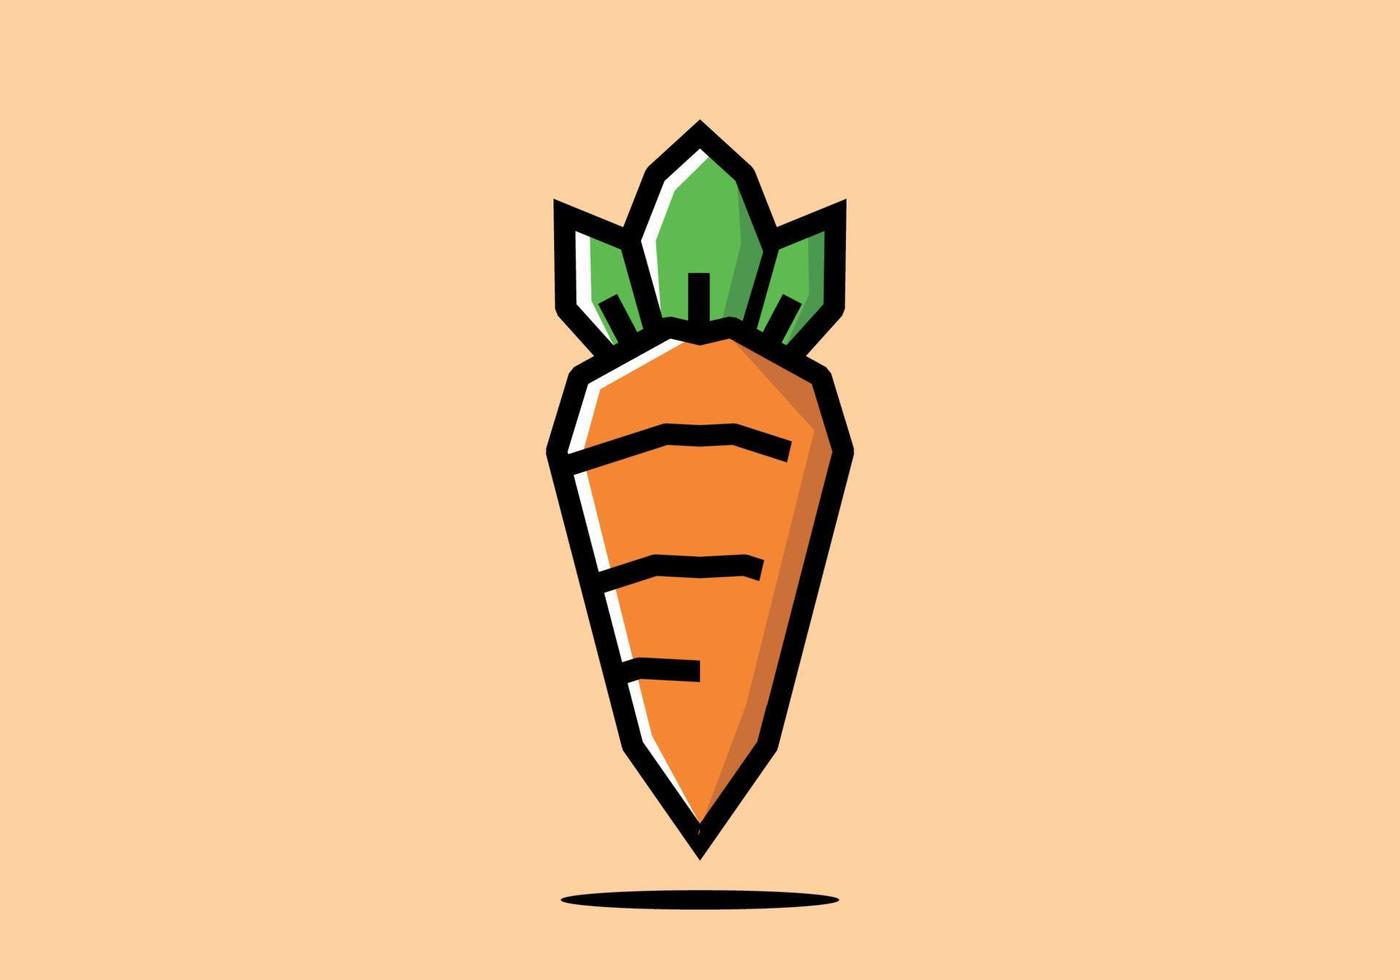 stile artistico rigido di carota arancione vettore